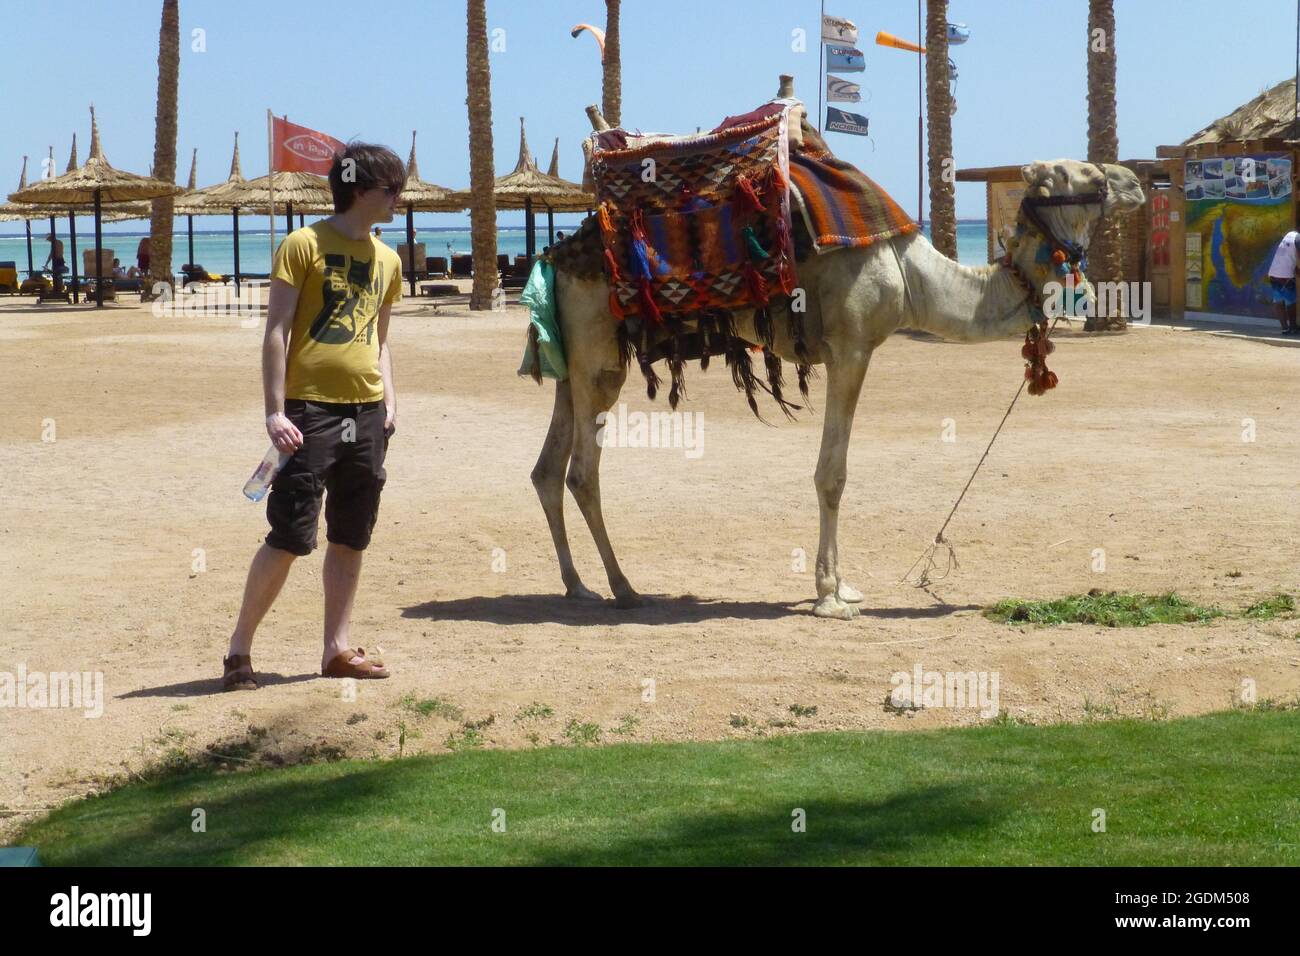 Kamele in Sharm El Sheikh Ägypten Mann hält Wasserflasche auf Strand Tiere gebunden Seil Sattel Decke Strand heißer Sand Life Boy Mann Stockfoto